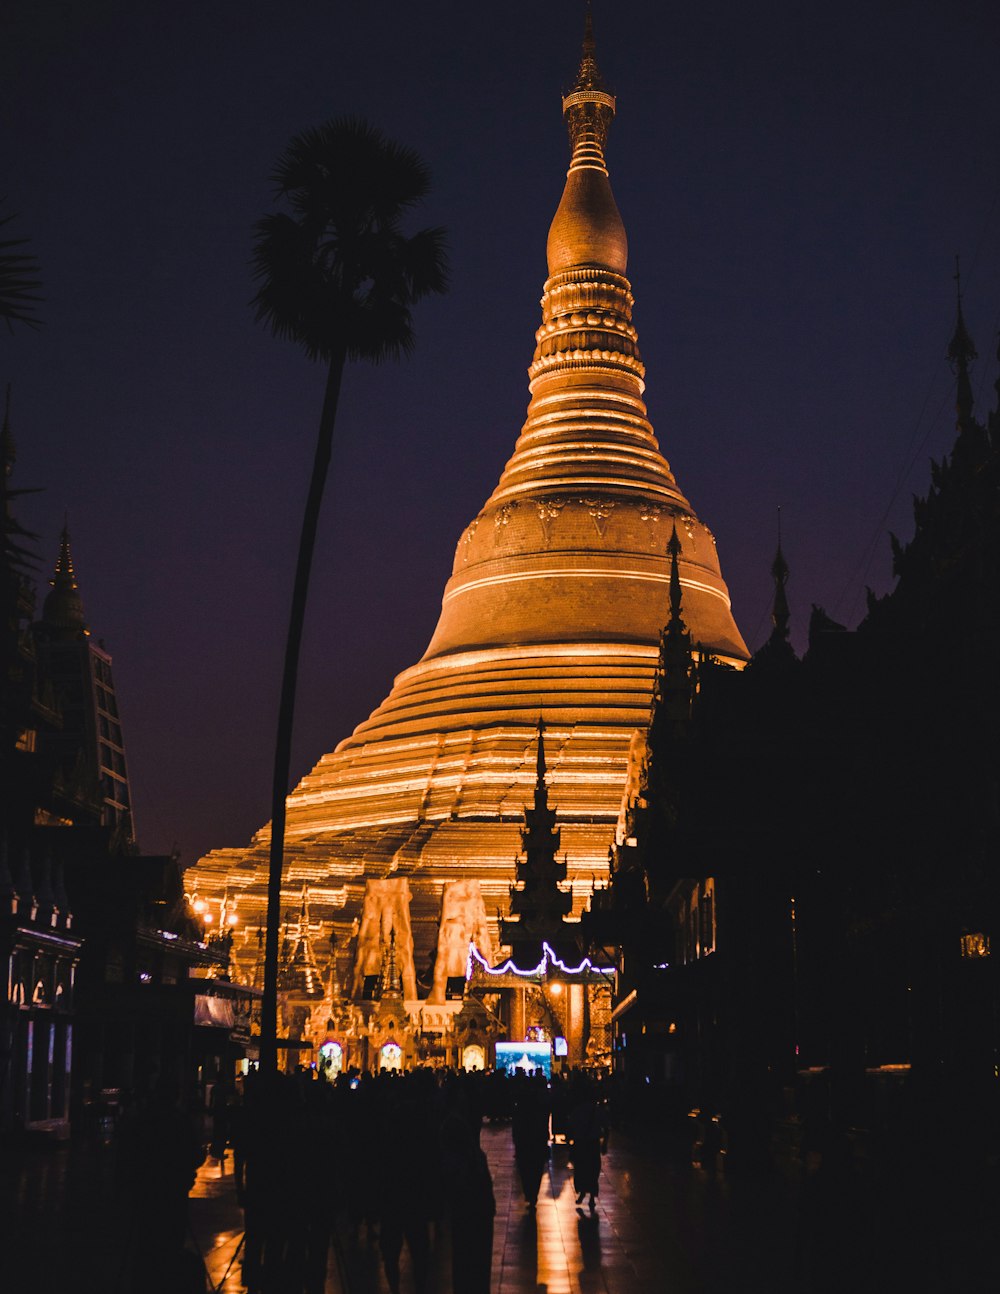 夜間のライトアップで飾られた茶色の寺院